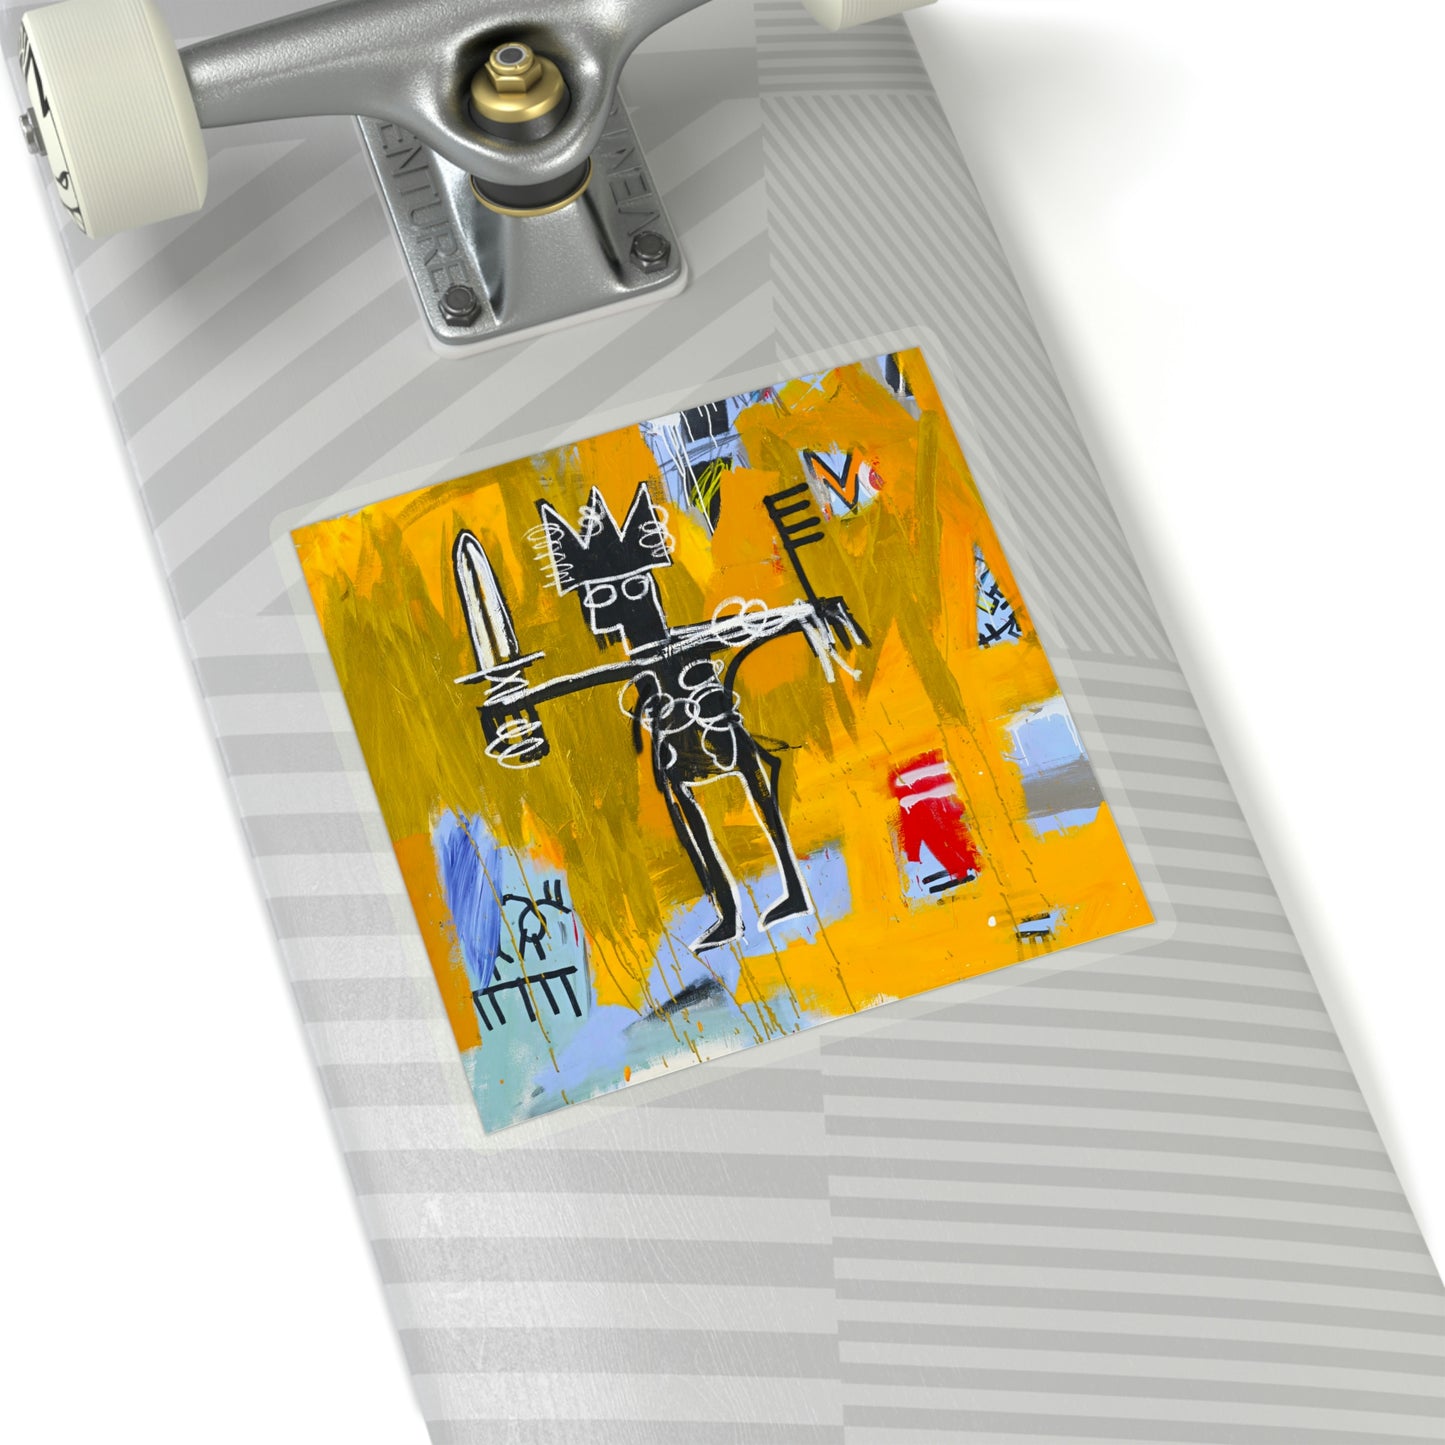 Jean-Michel Basquiat "Julius Caesar on Gold" Artwork Vinyl Sticker